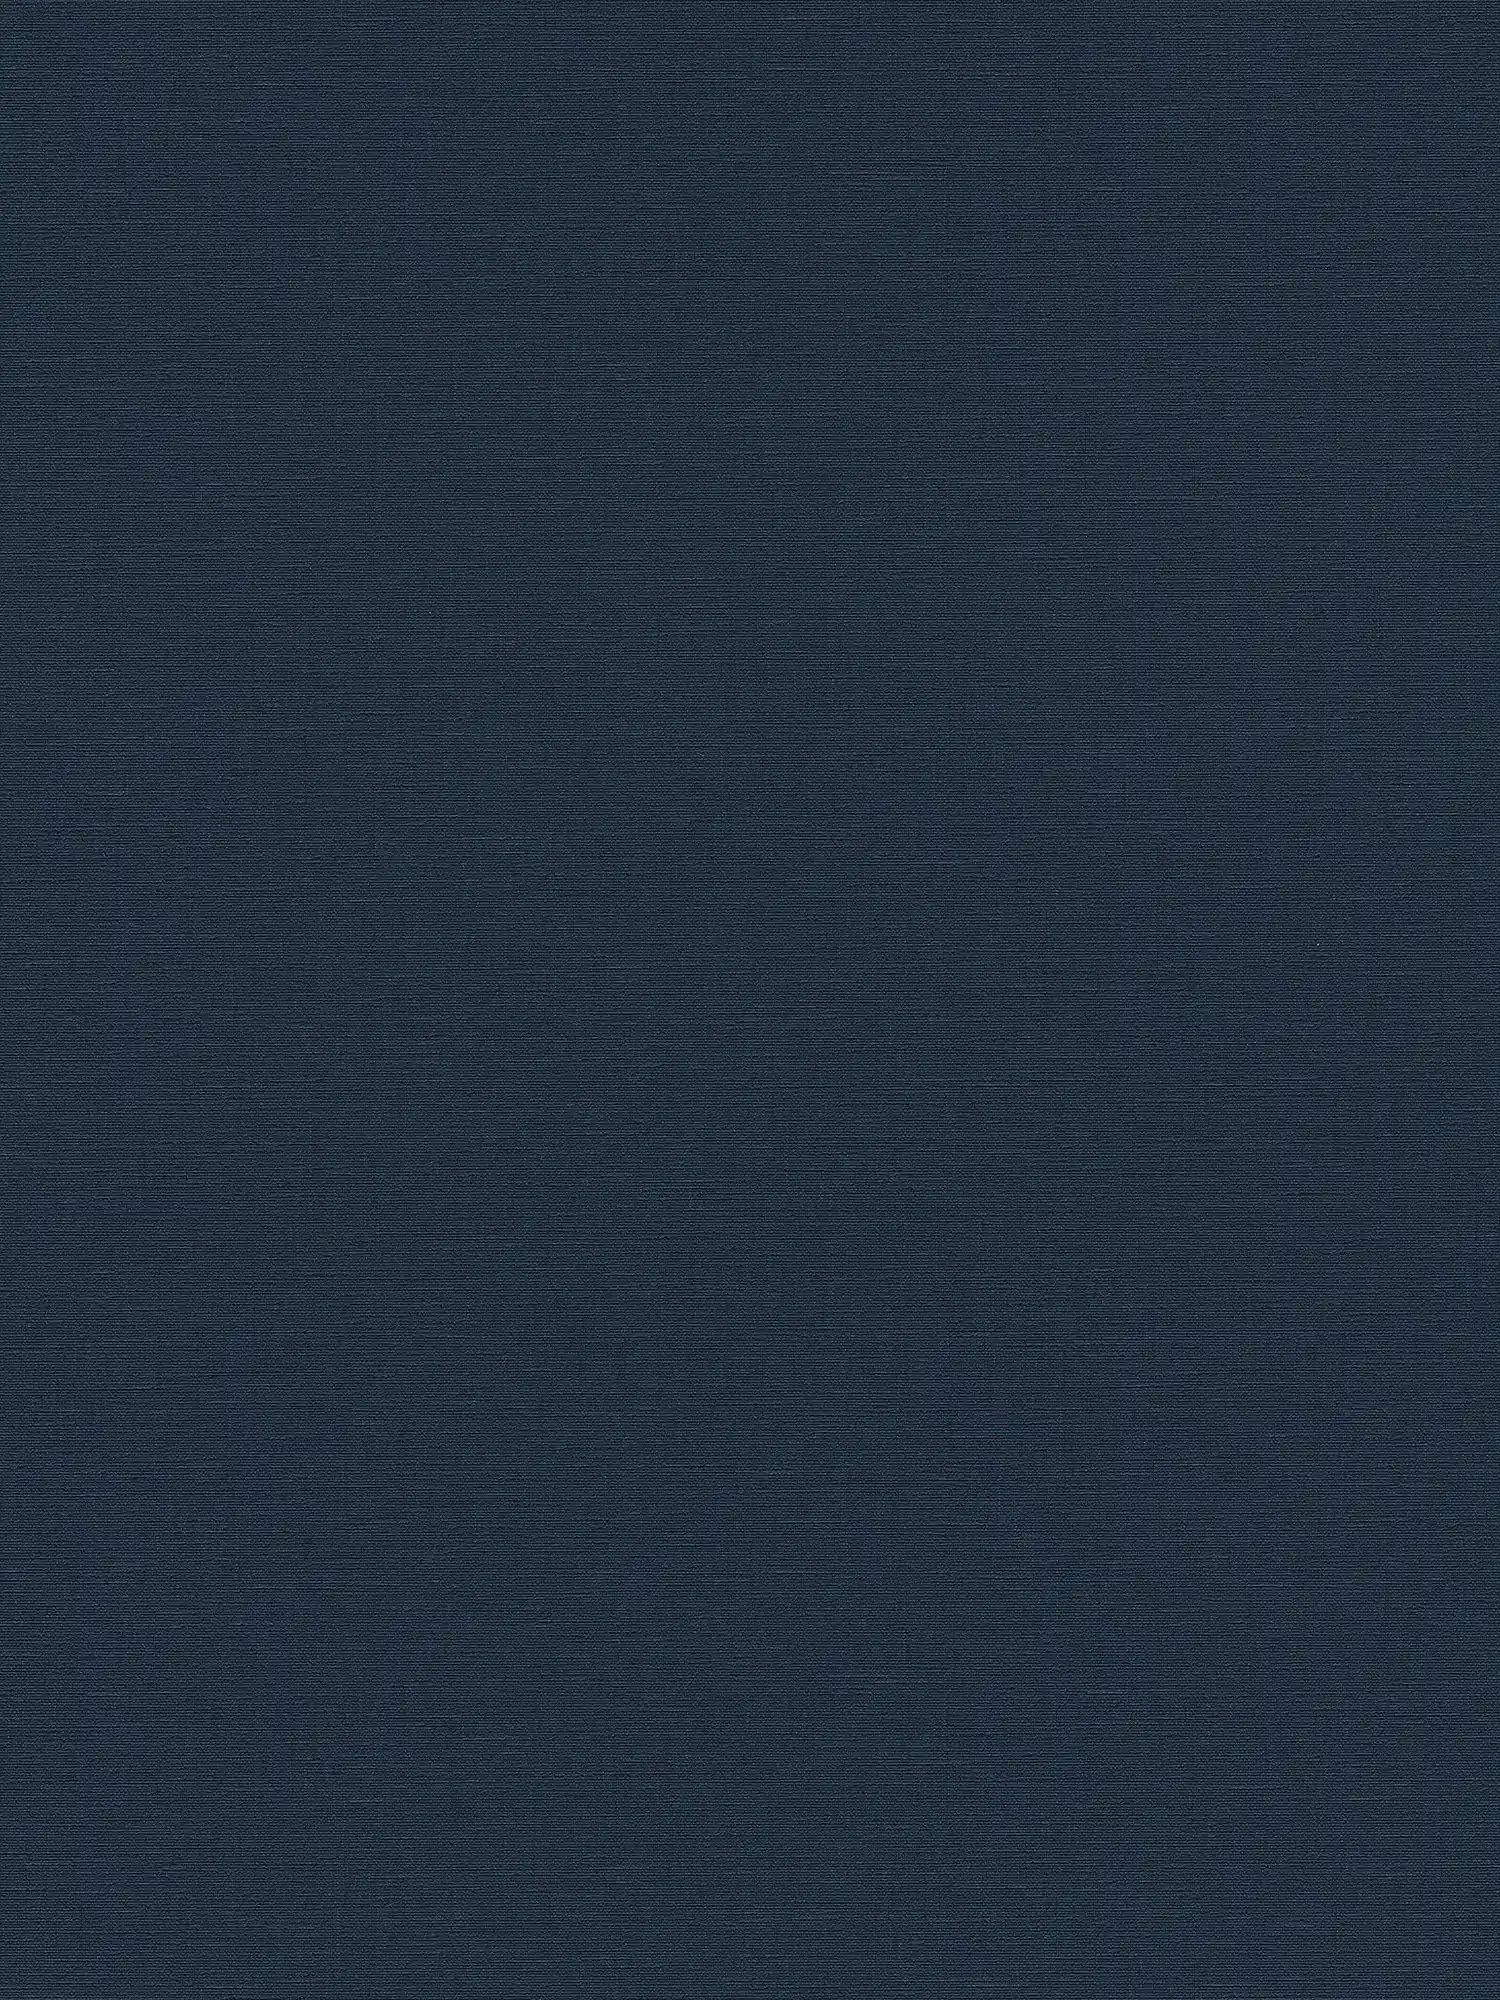 Donkerblauw vliesbehang met linnenlook - blauw
